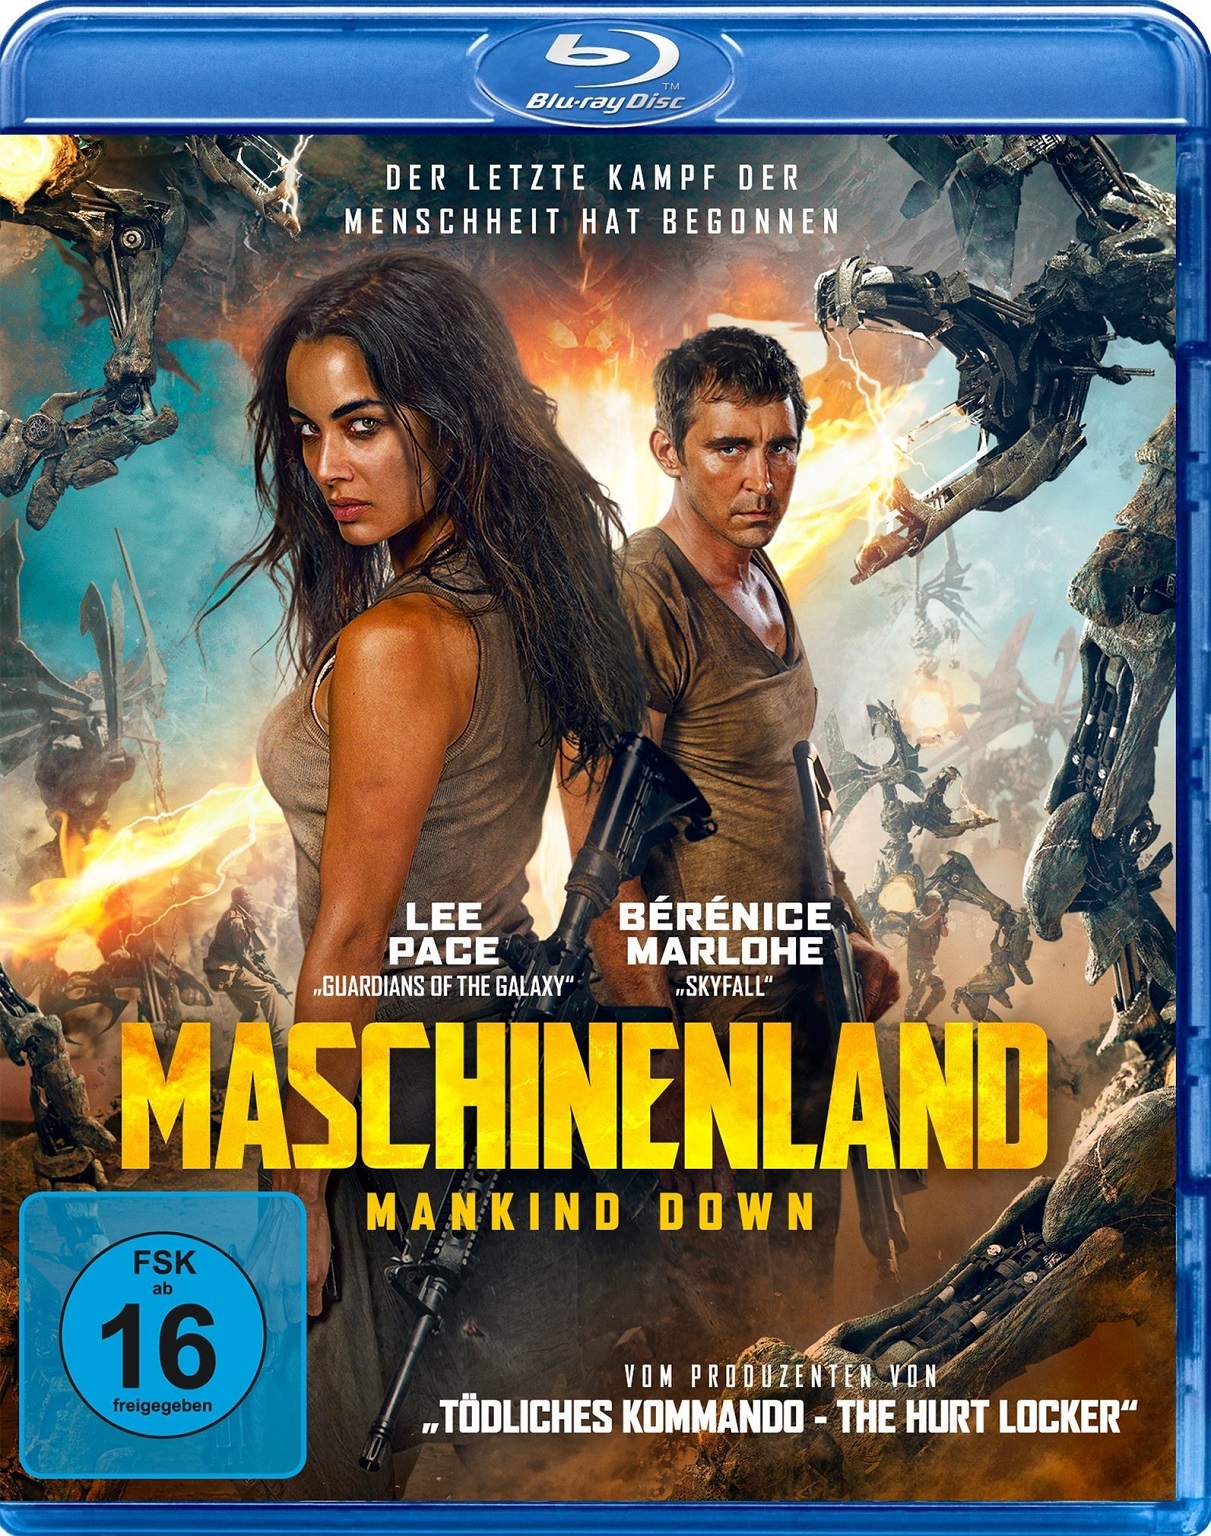 Maschinenland - Mankind Down.jpg